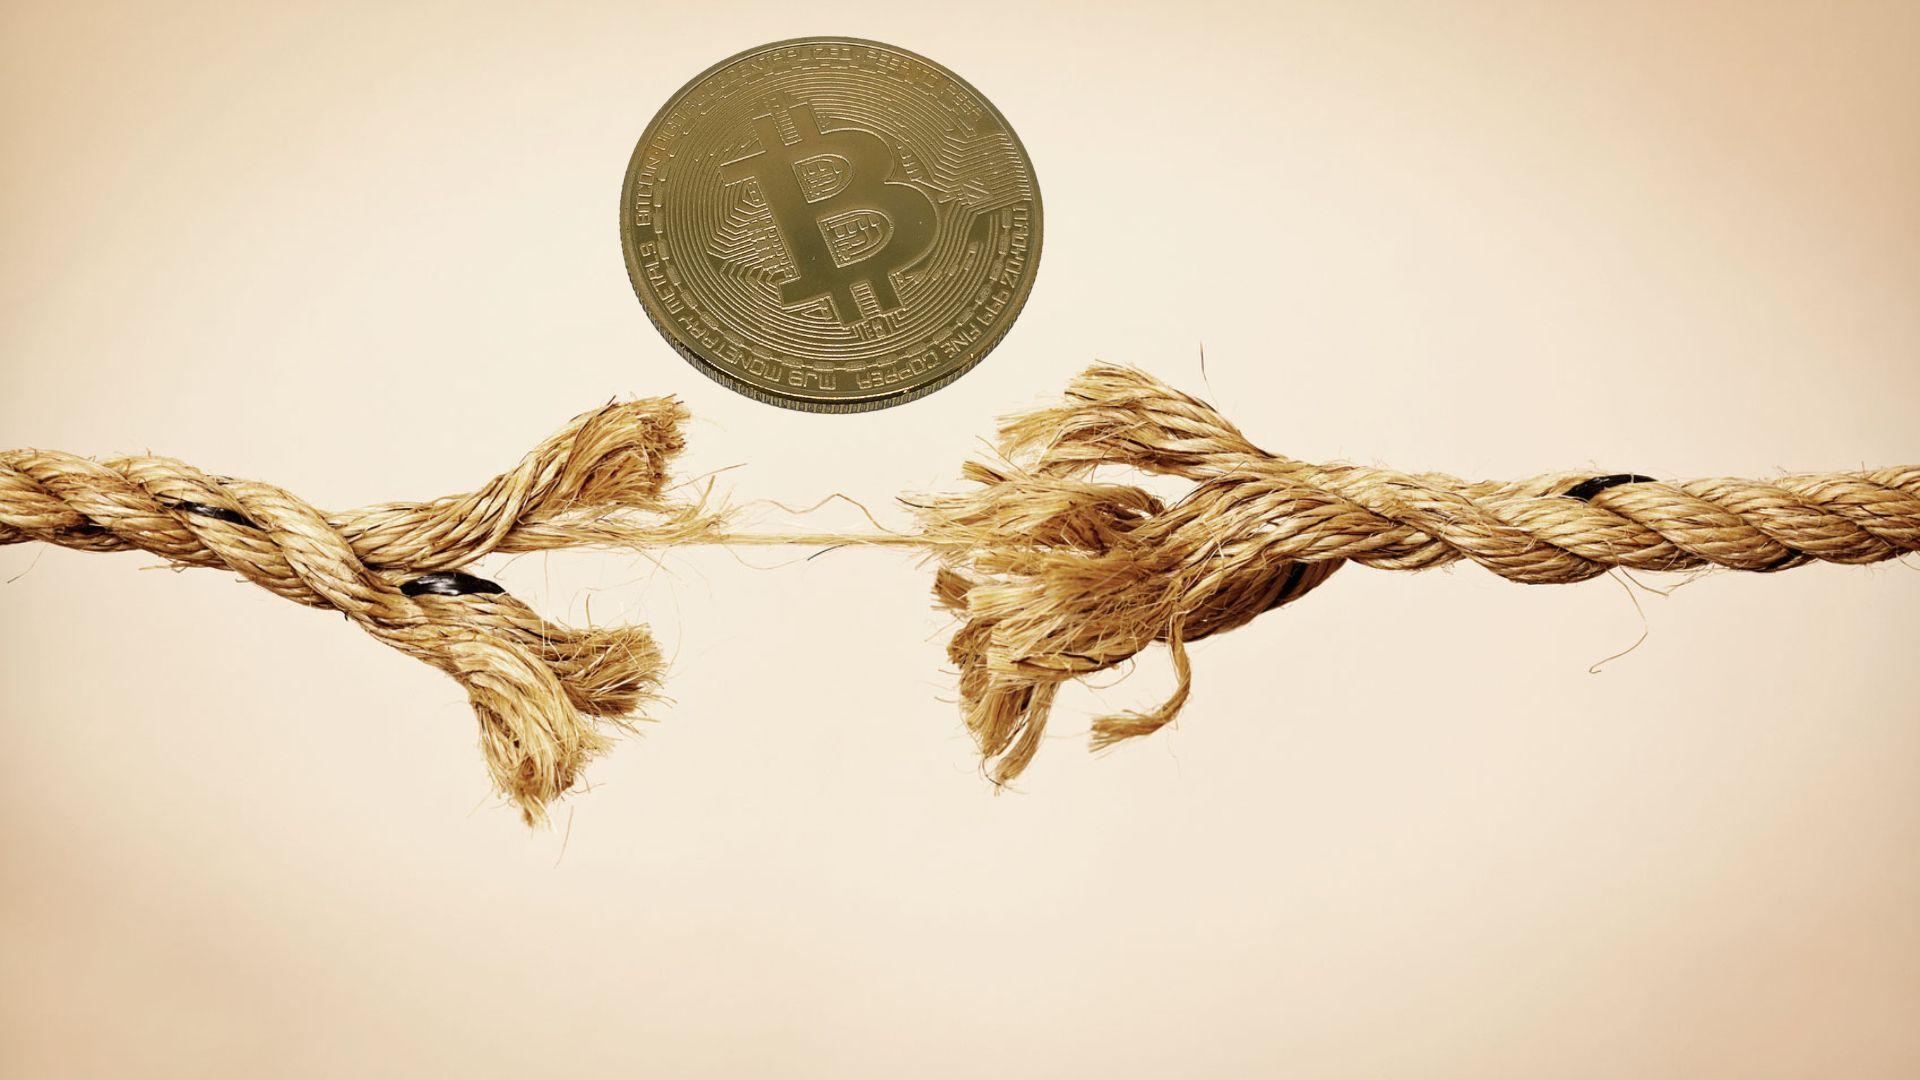  Makro strategas mano, kad Bitcoin atsiejimas nuo akcijų leistų jam klestėti